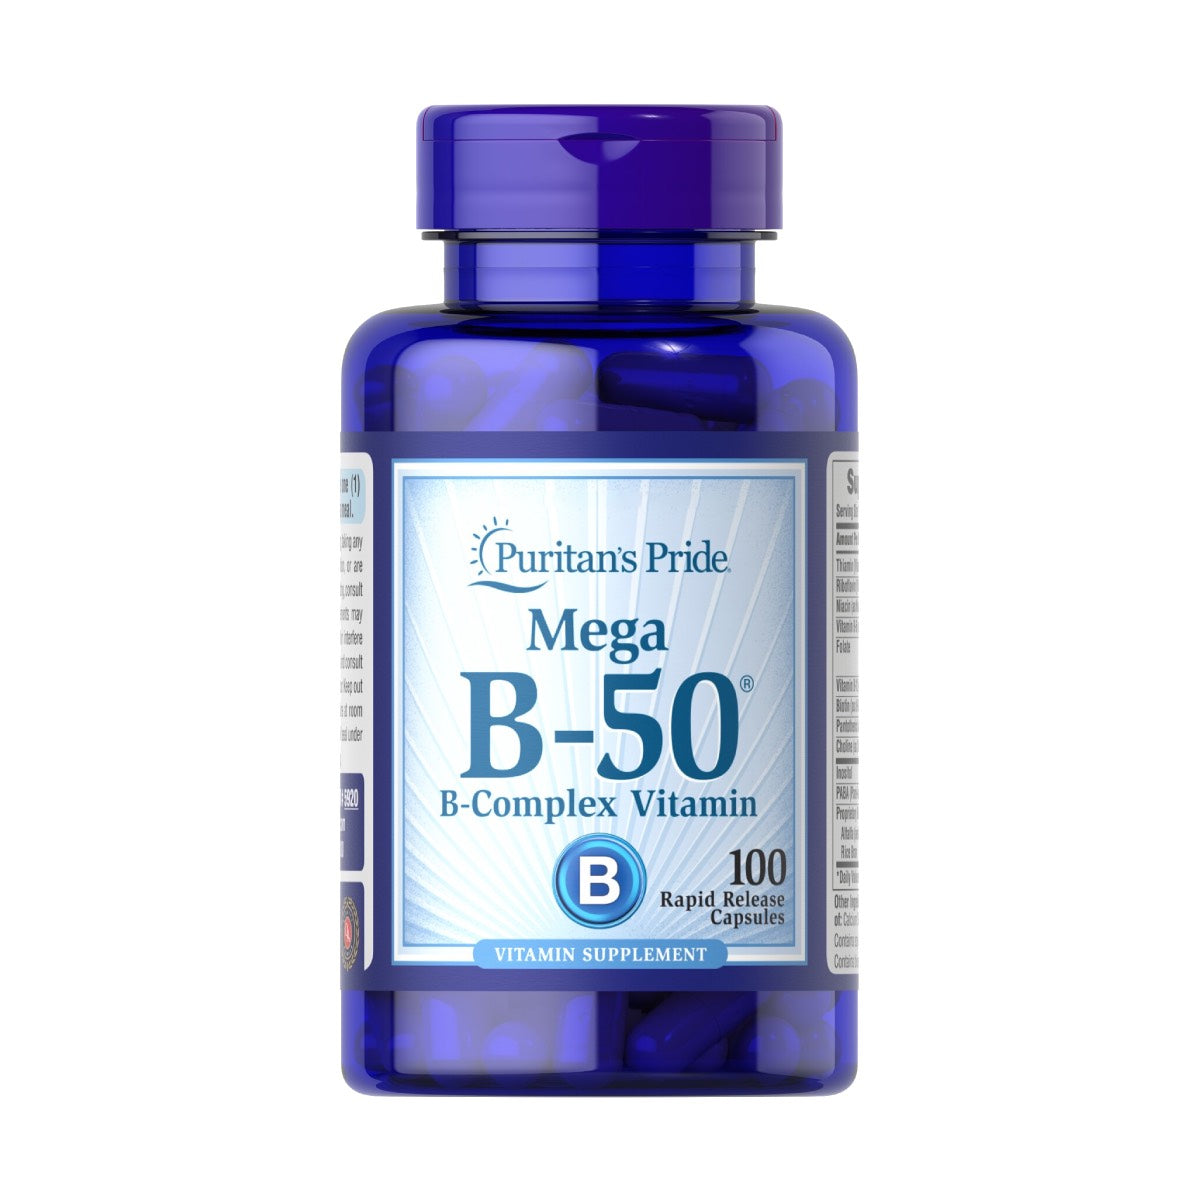 Puritan's Pride, Vitamin B-50® Complex